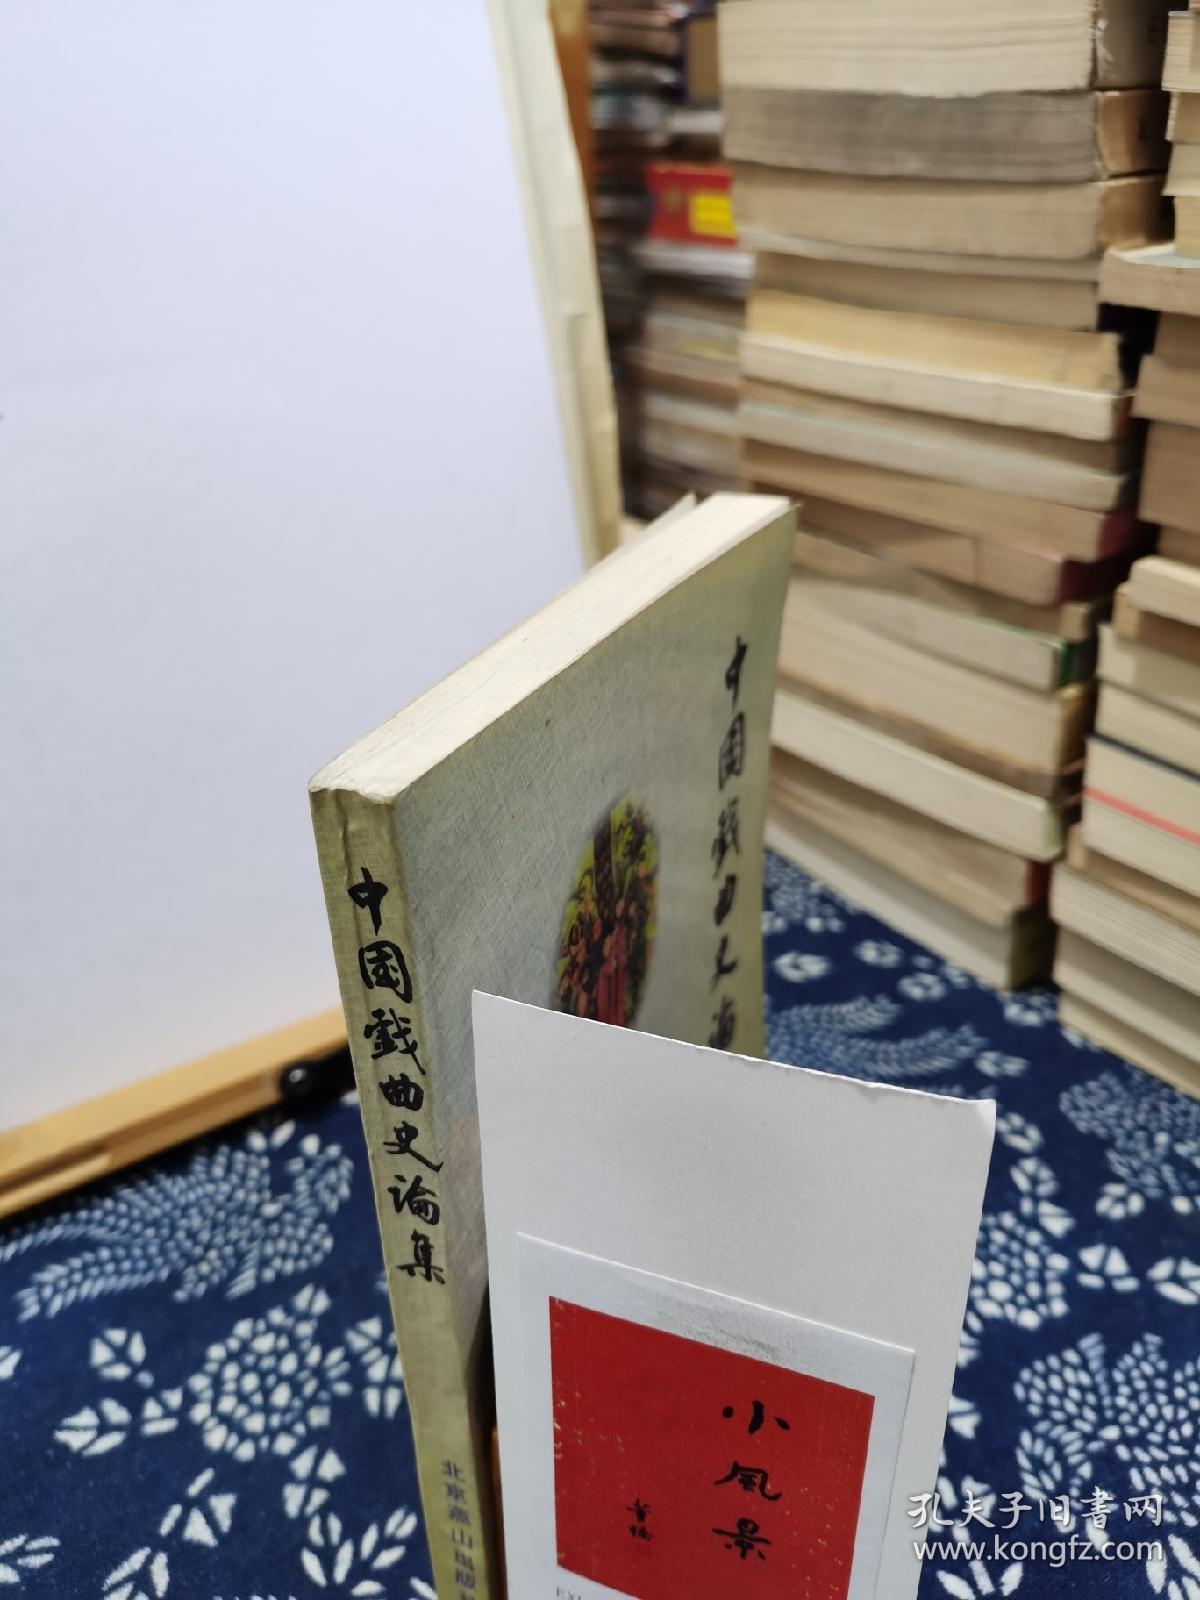 中国戏曲史论集 95年一版一印 品纸如图 书票一枚 便宜12元